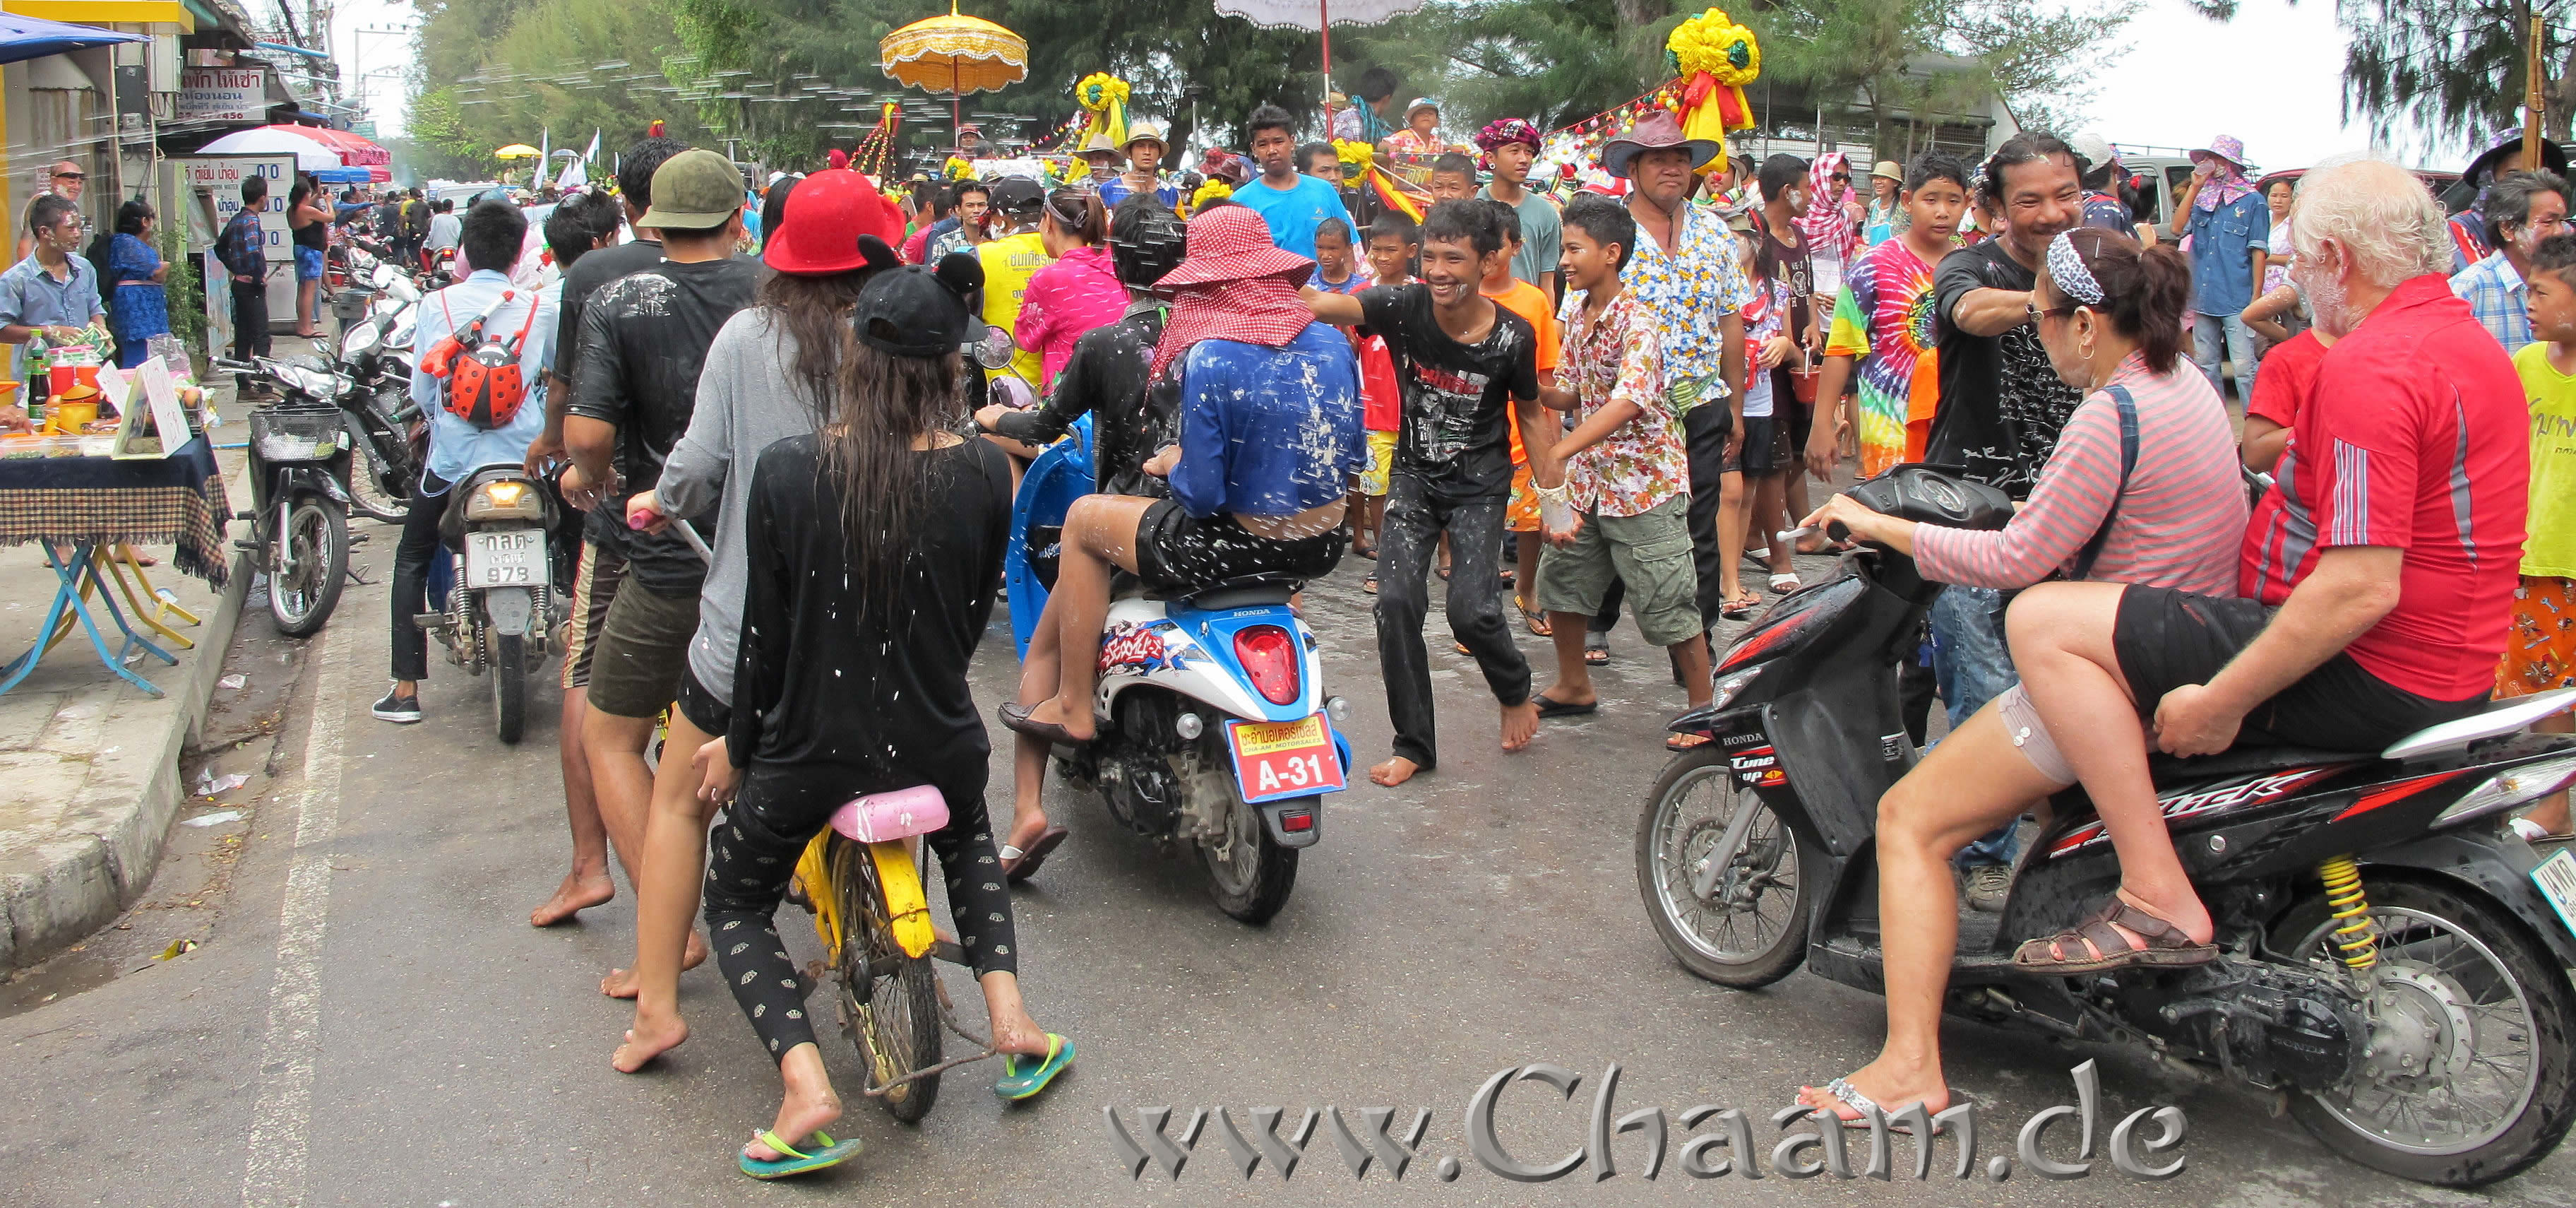 Menschen auf der Straße - Songkran